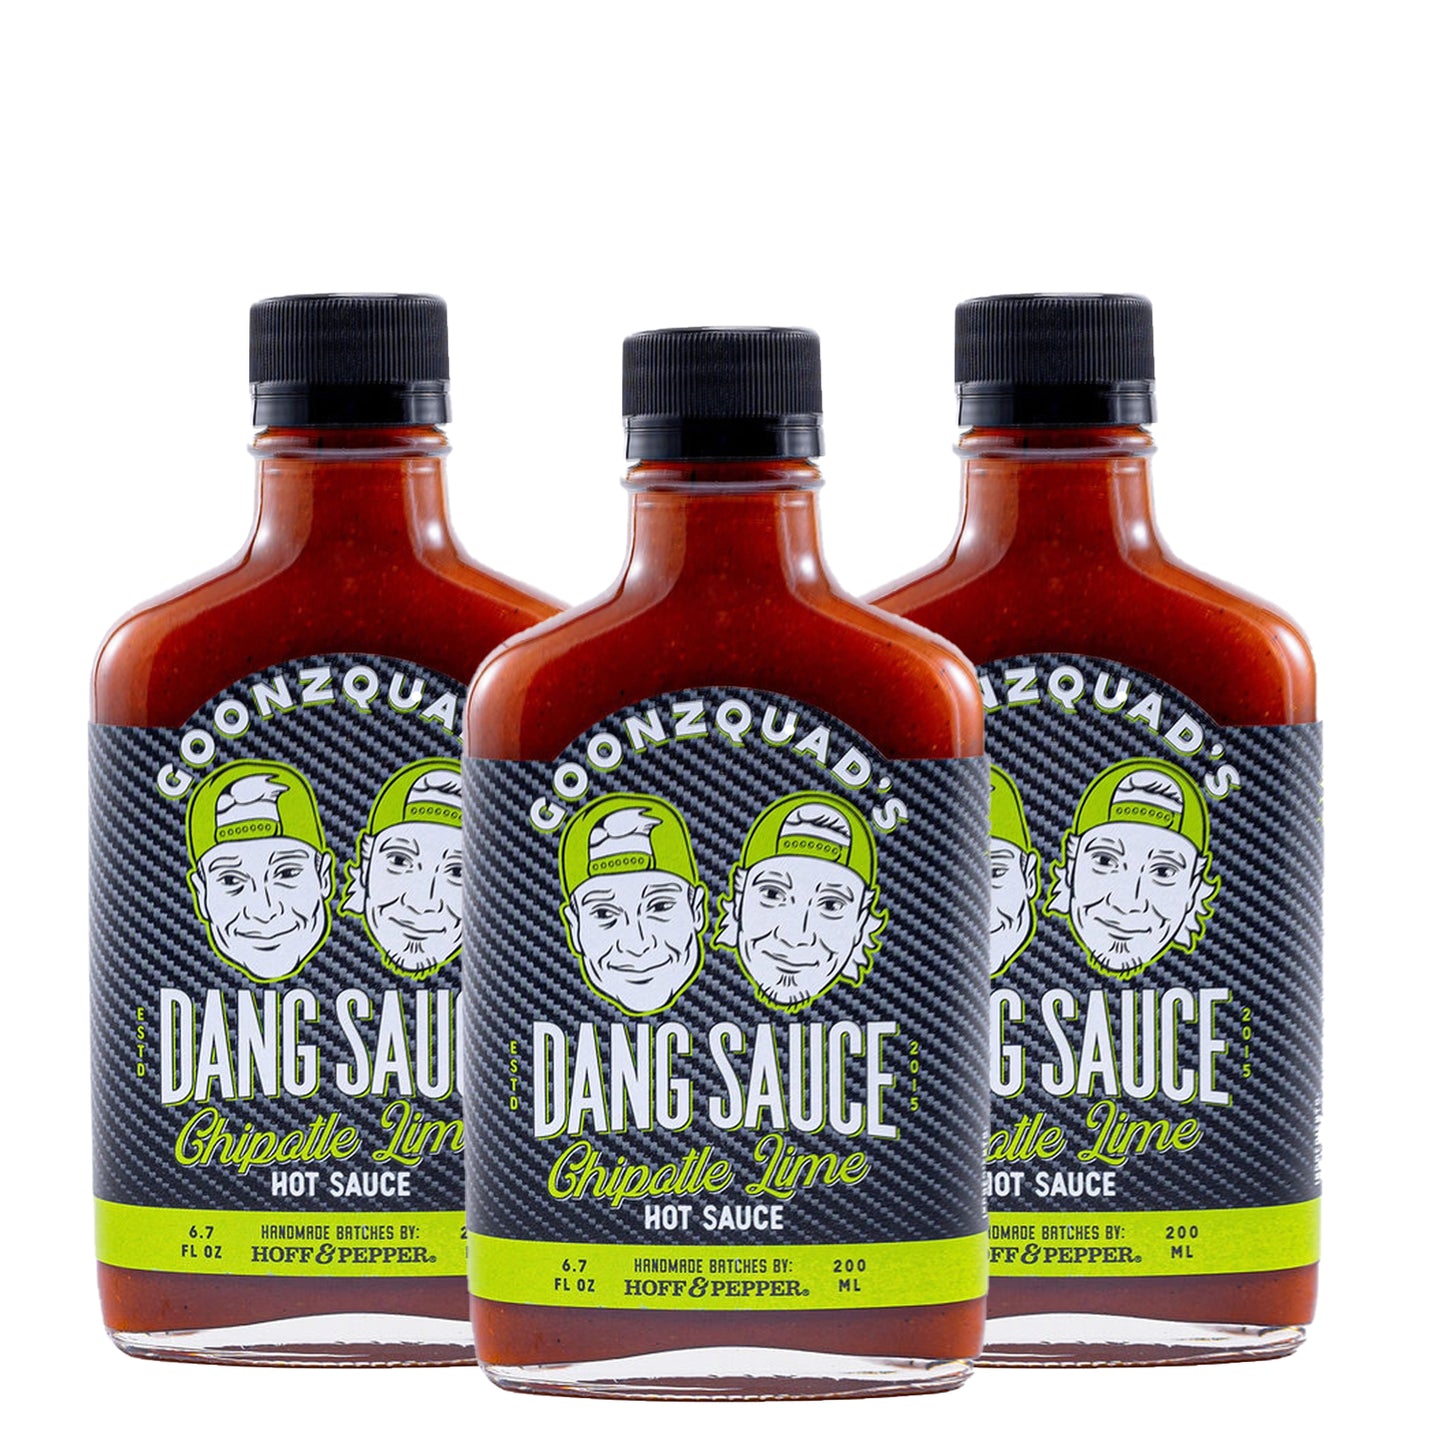 Dang Sauce Hot Sauce